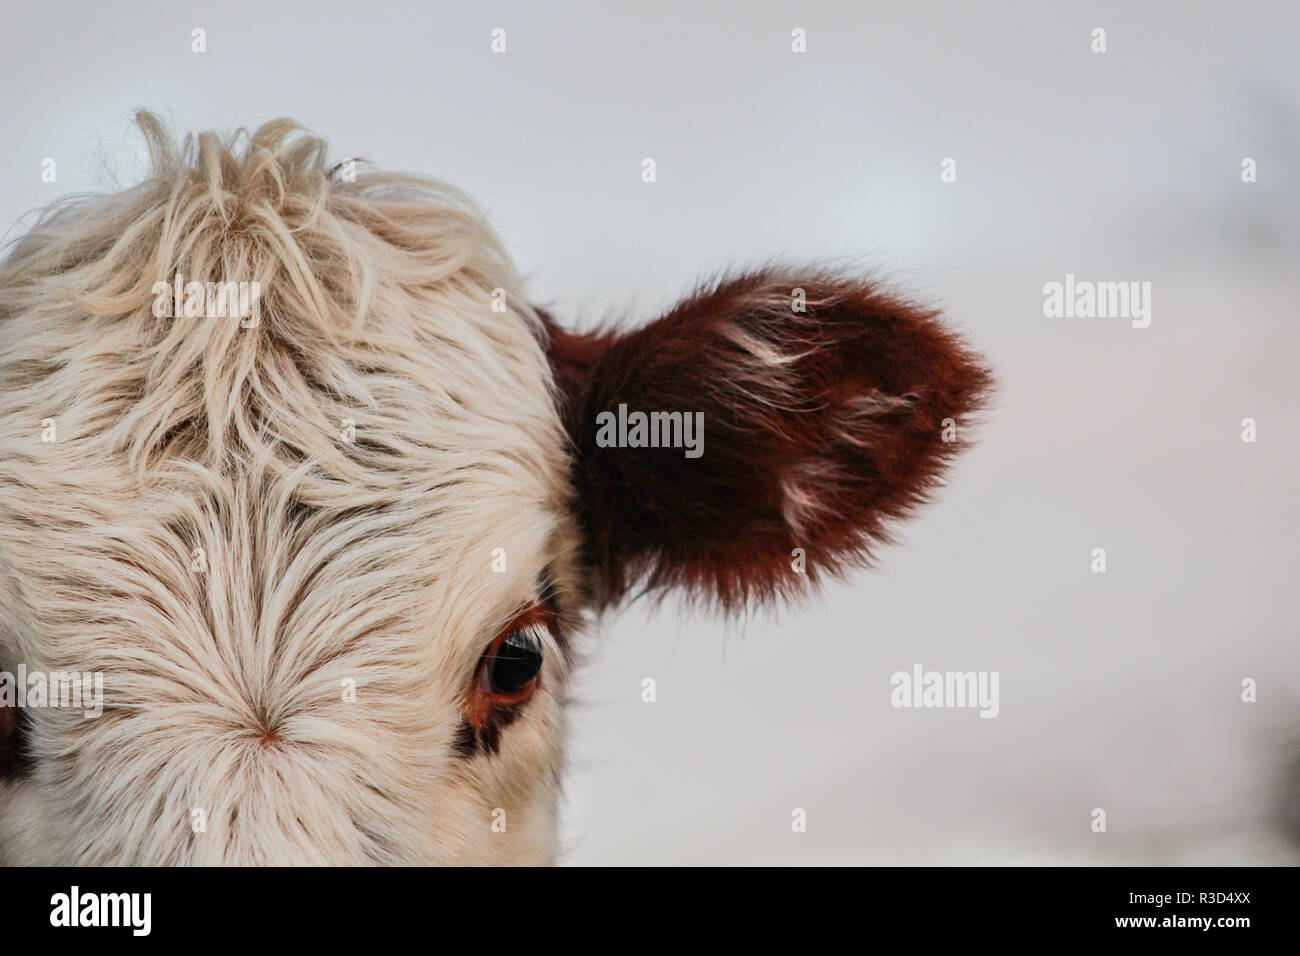 Parte de cabeza de vaca, animal mirando a la cámara Foto de stock